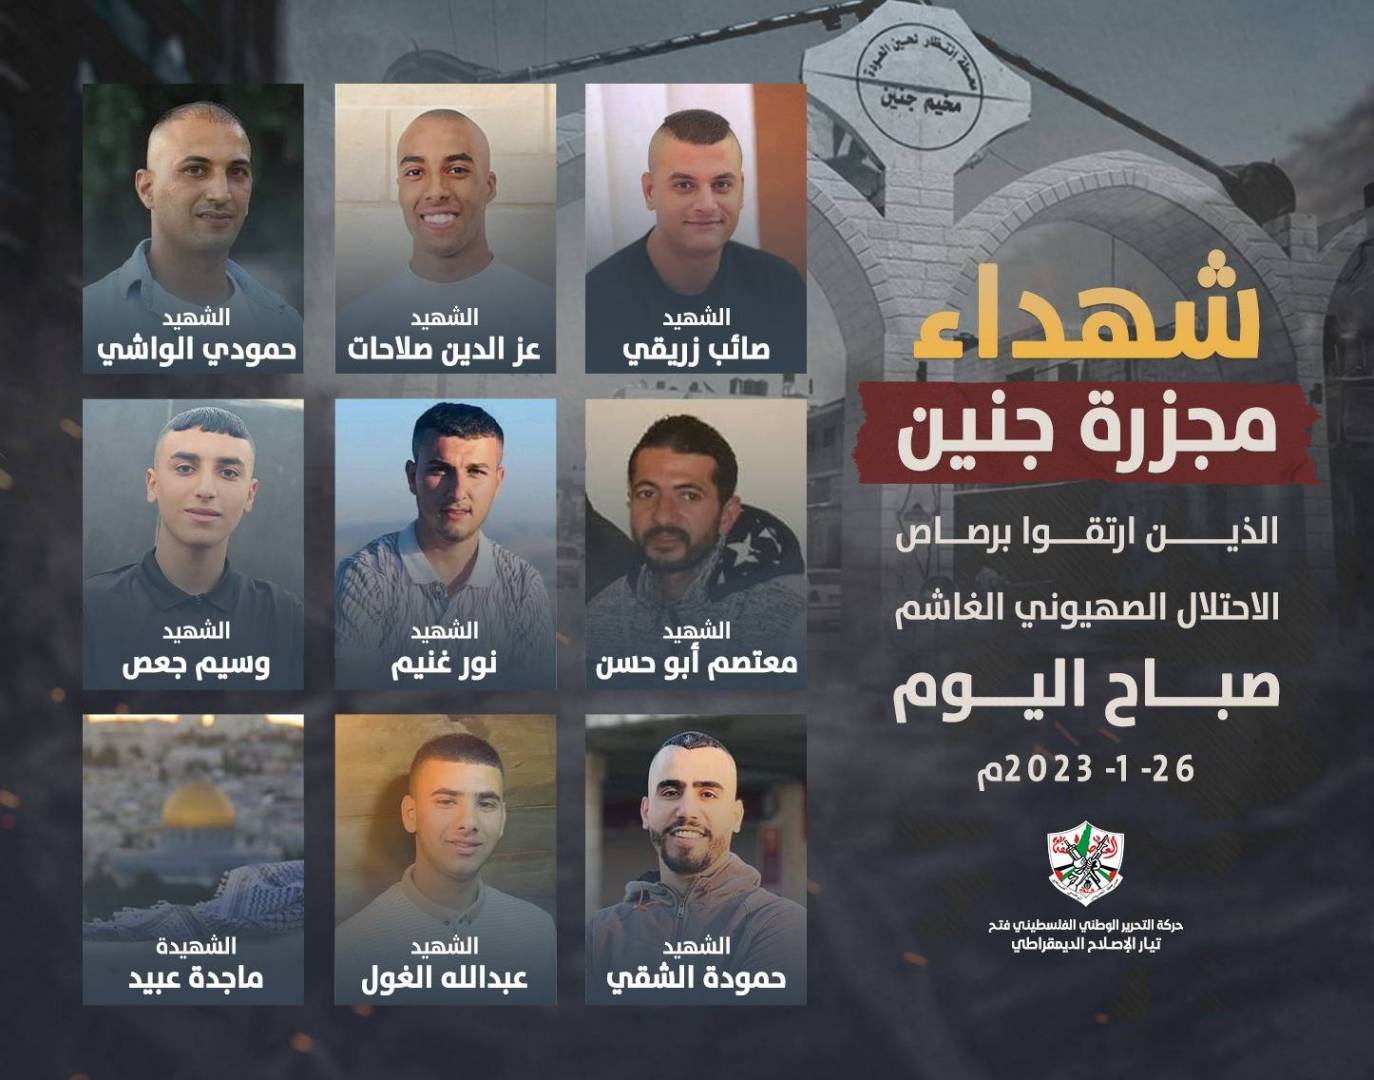 جبهة الخلاص الوطني الفلسطيني تنعى شهداء فلسطين التسعة الذين ارتقوا صباح اليوم في مخيم جنين